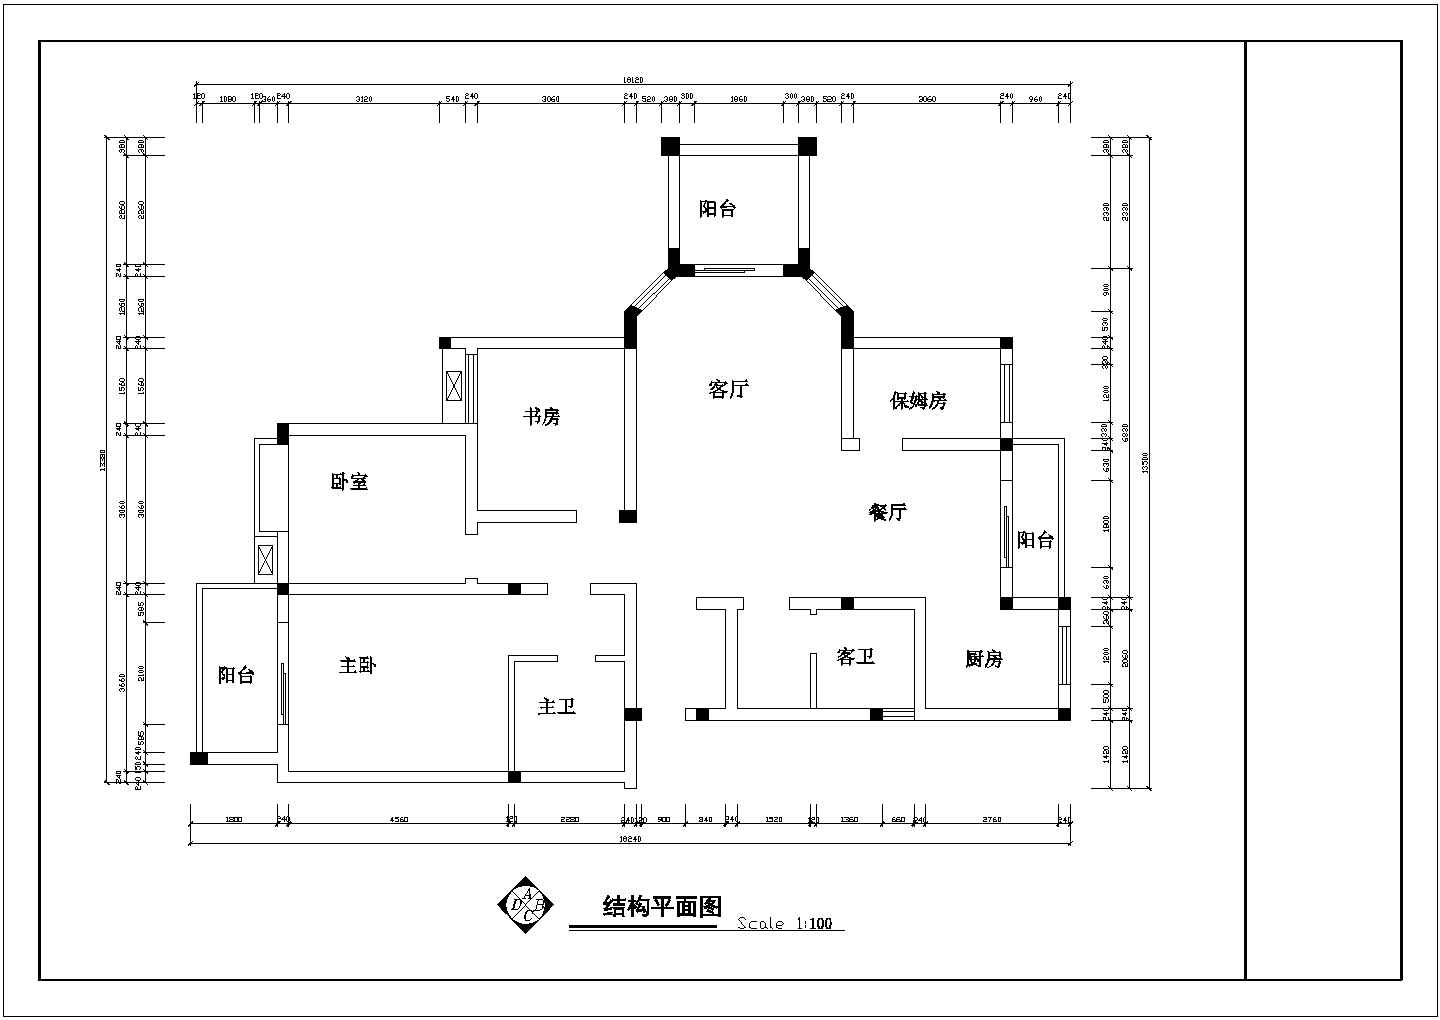 套房户型设计施工图【3室2厅2卫3阳台1保姆房、长18.24米、宽13.5米】